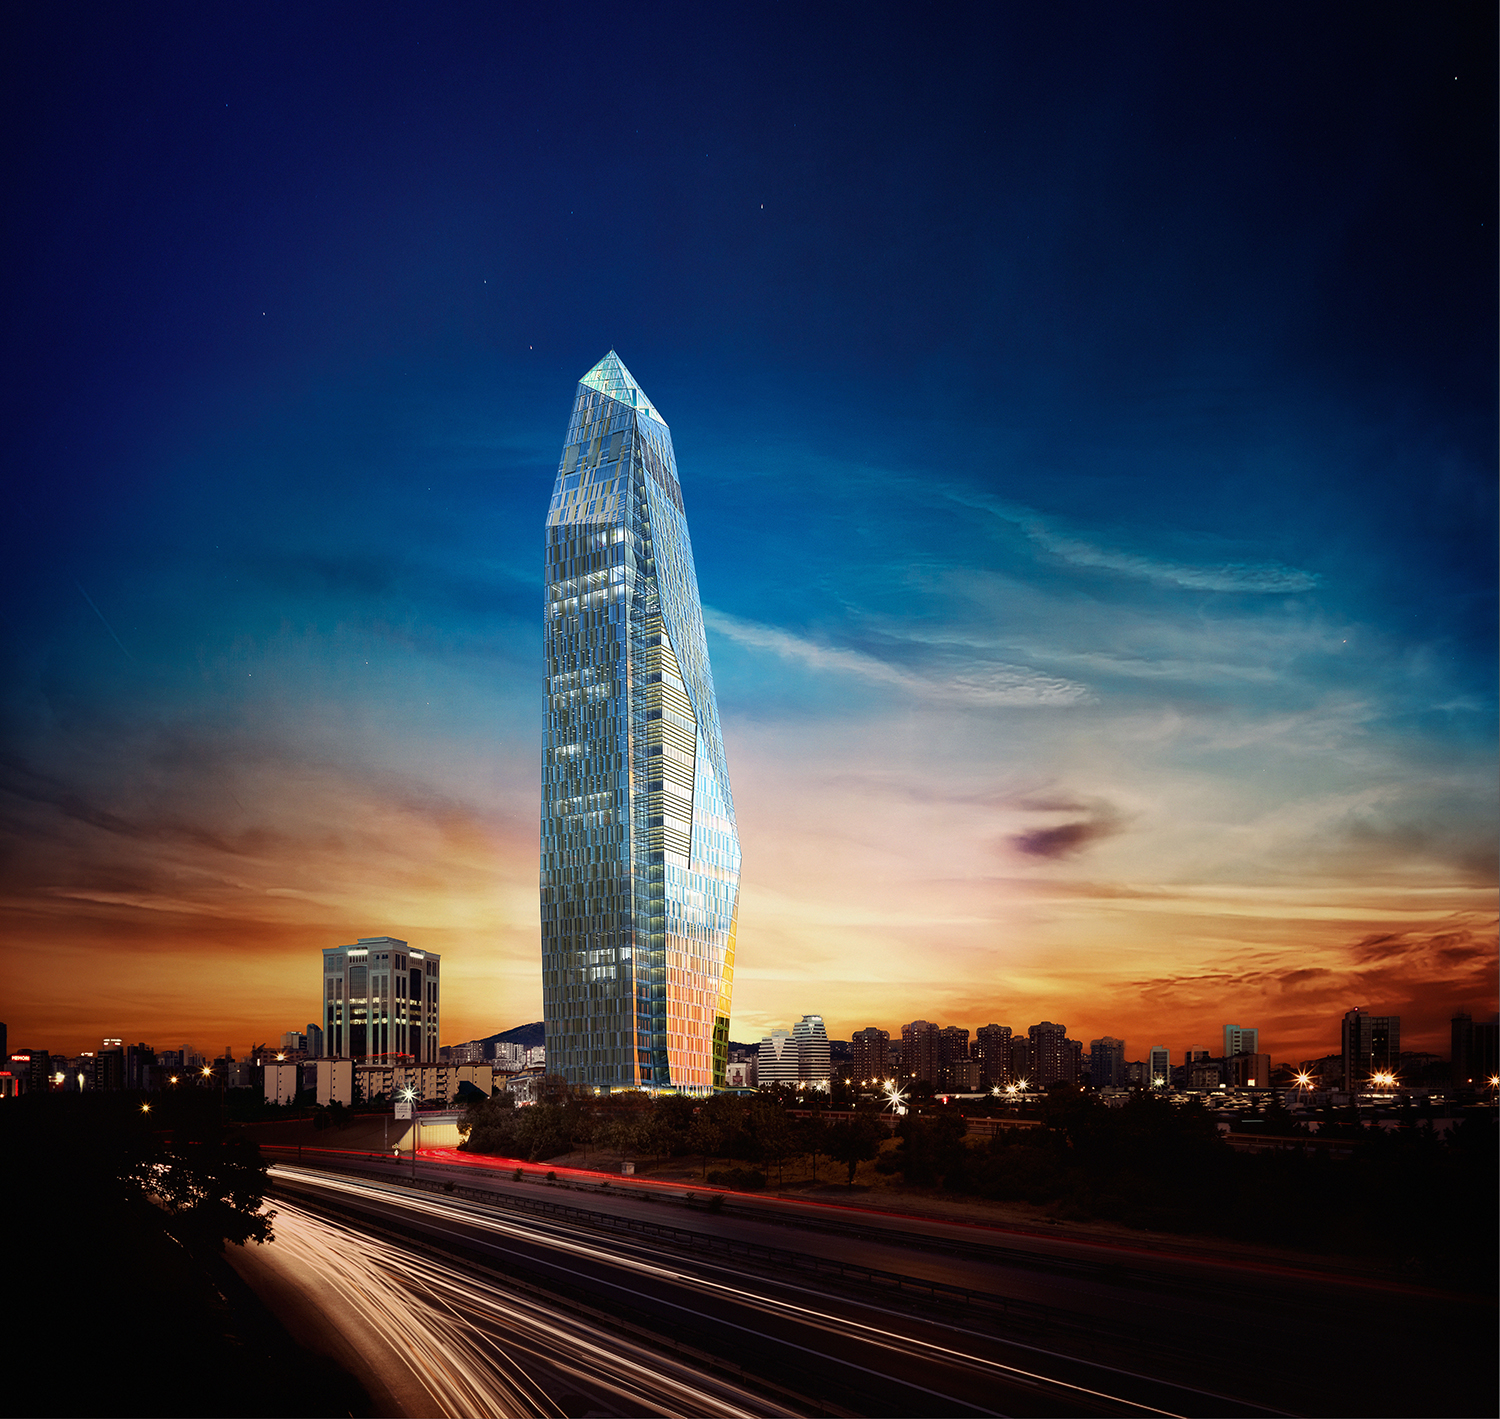 Yeni Nesil Sigortacılığın Geldiği Son Nokta Allianz Tower